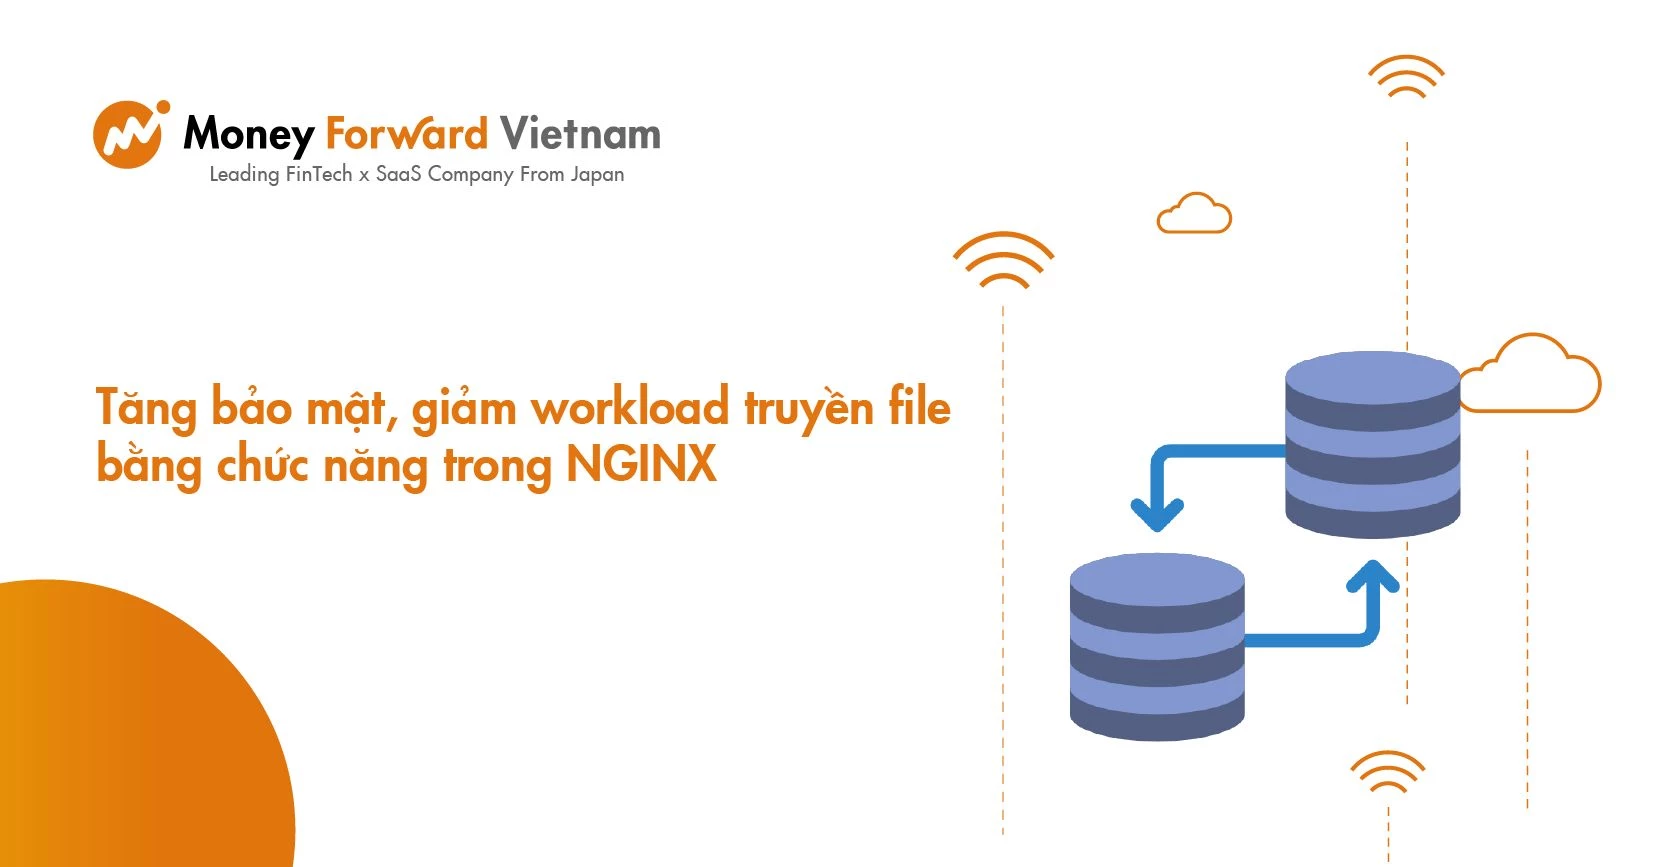 Tăng bảo mật, giảm workload truyền file bằng 2 chức năng này trong NGINX